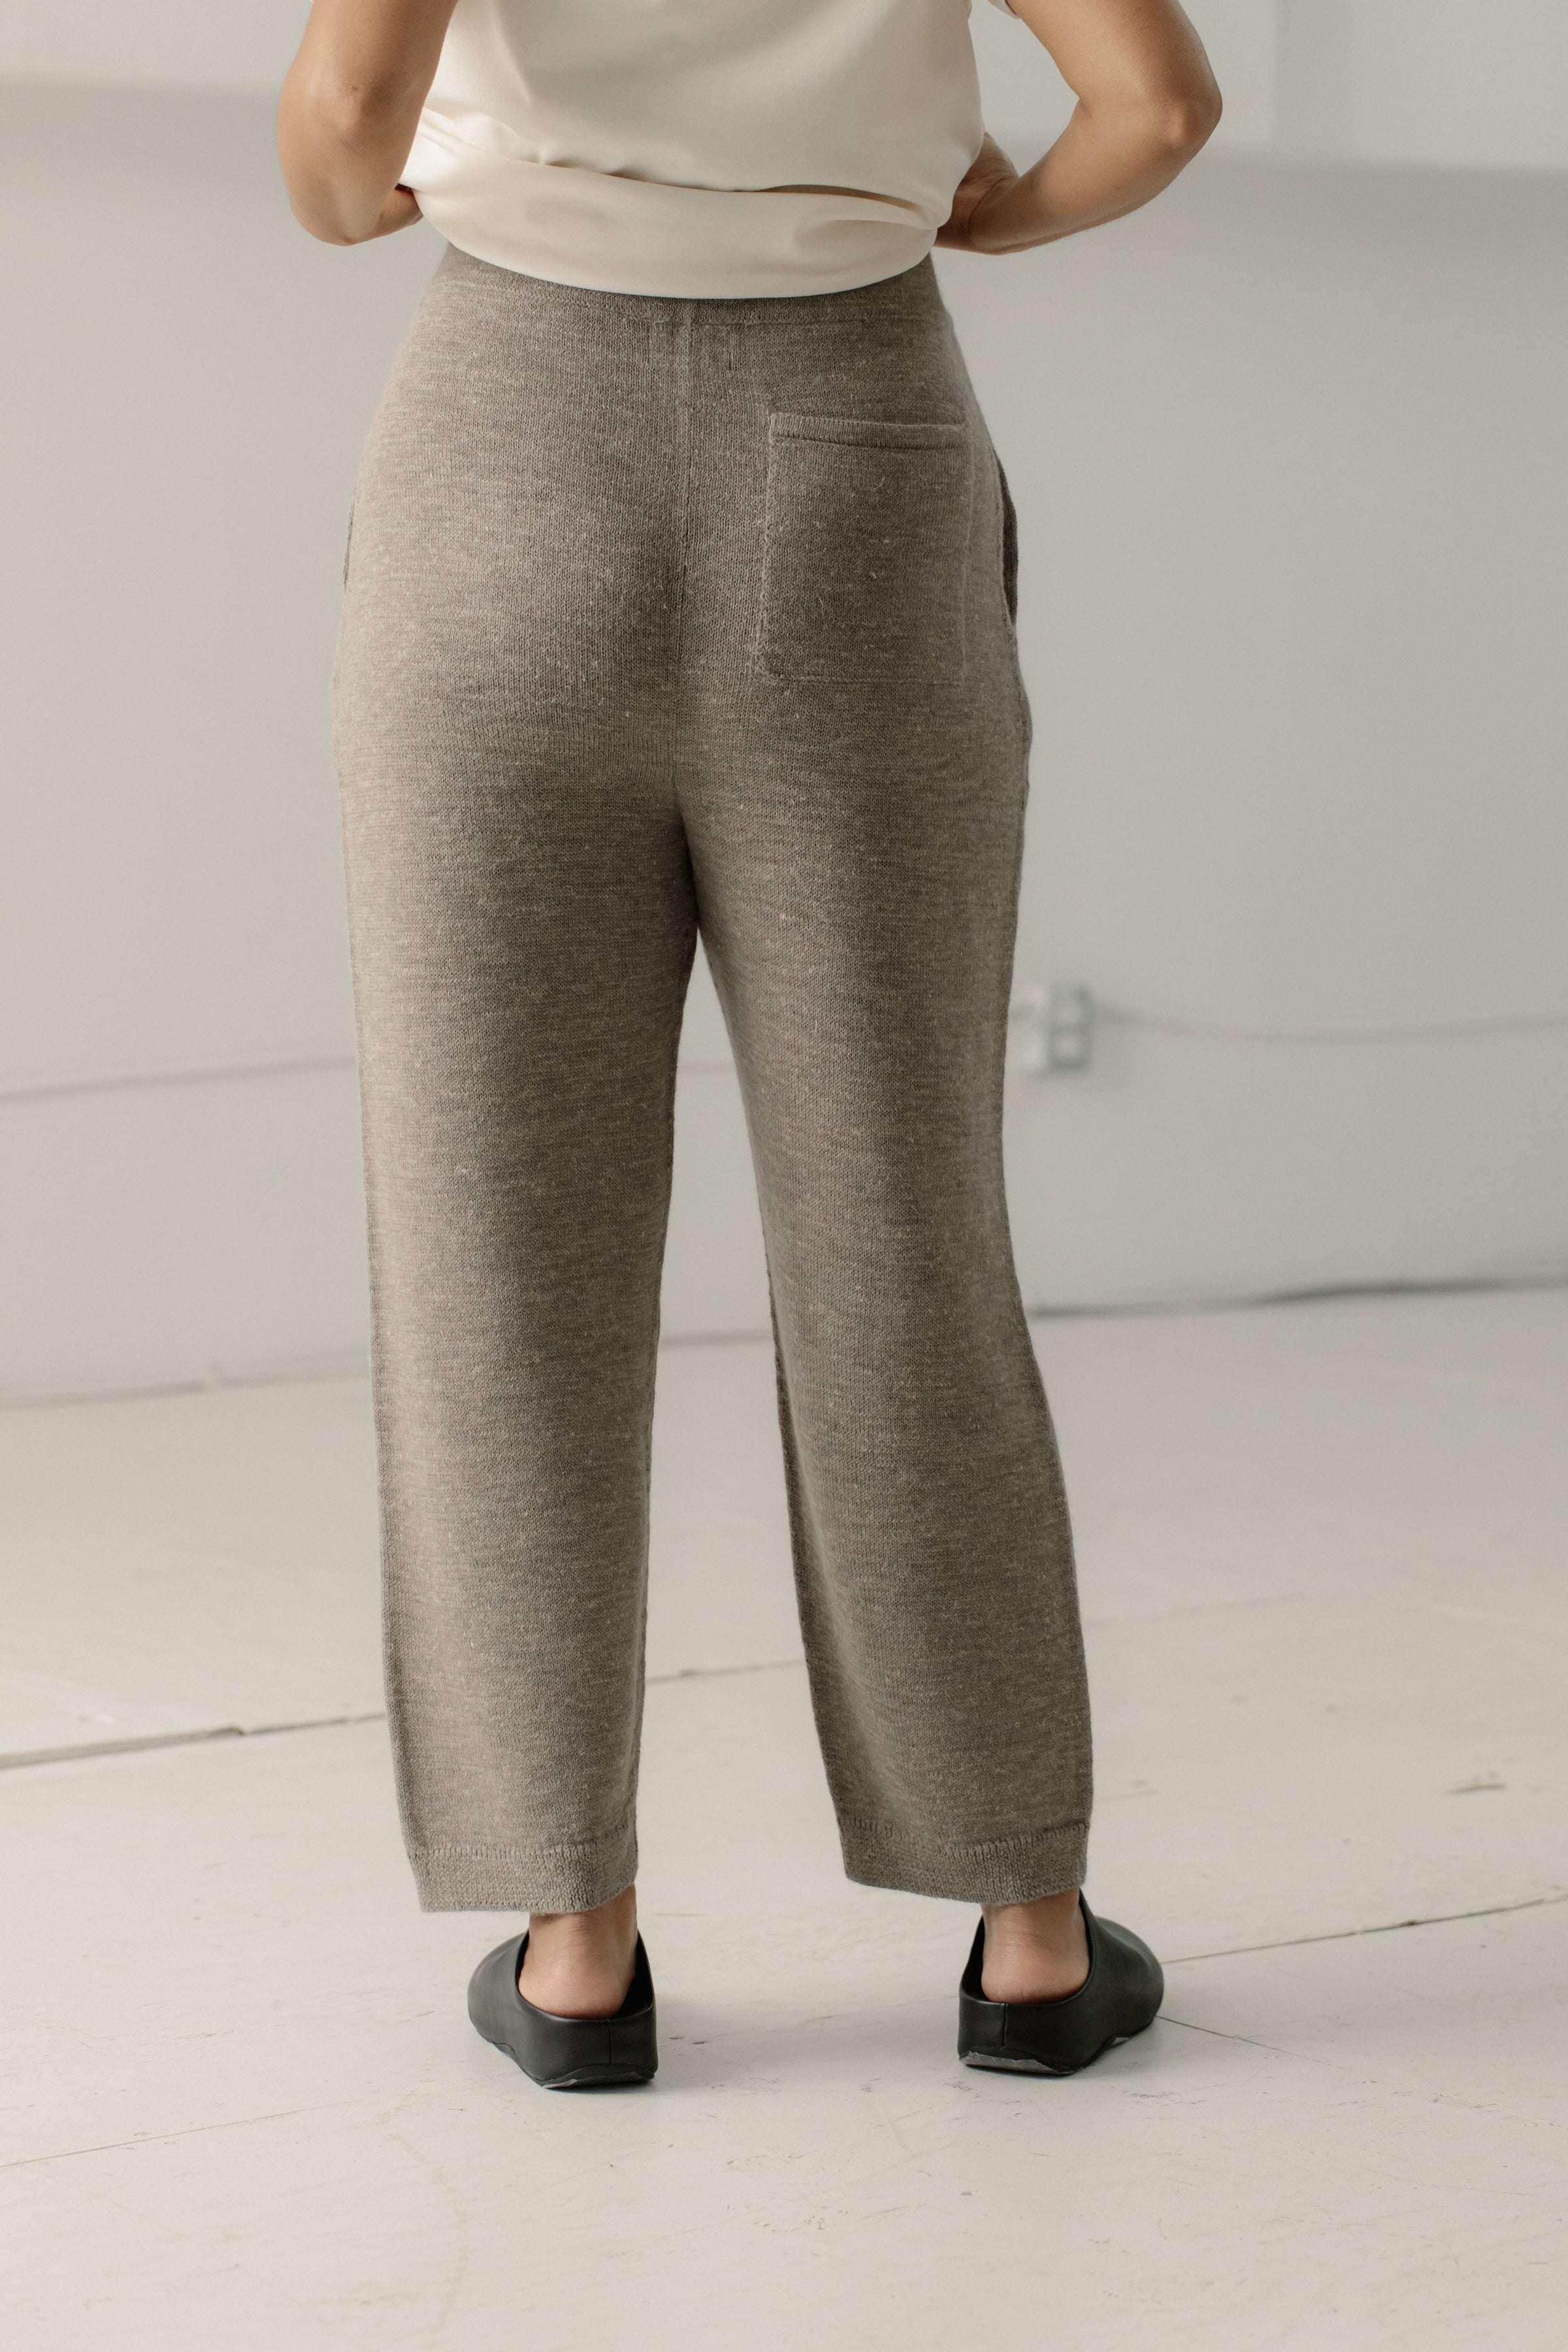 Ojai Pants in Slate – Bare Knitwear